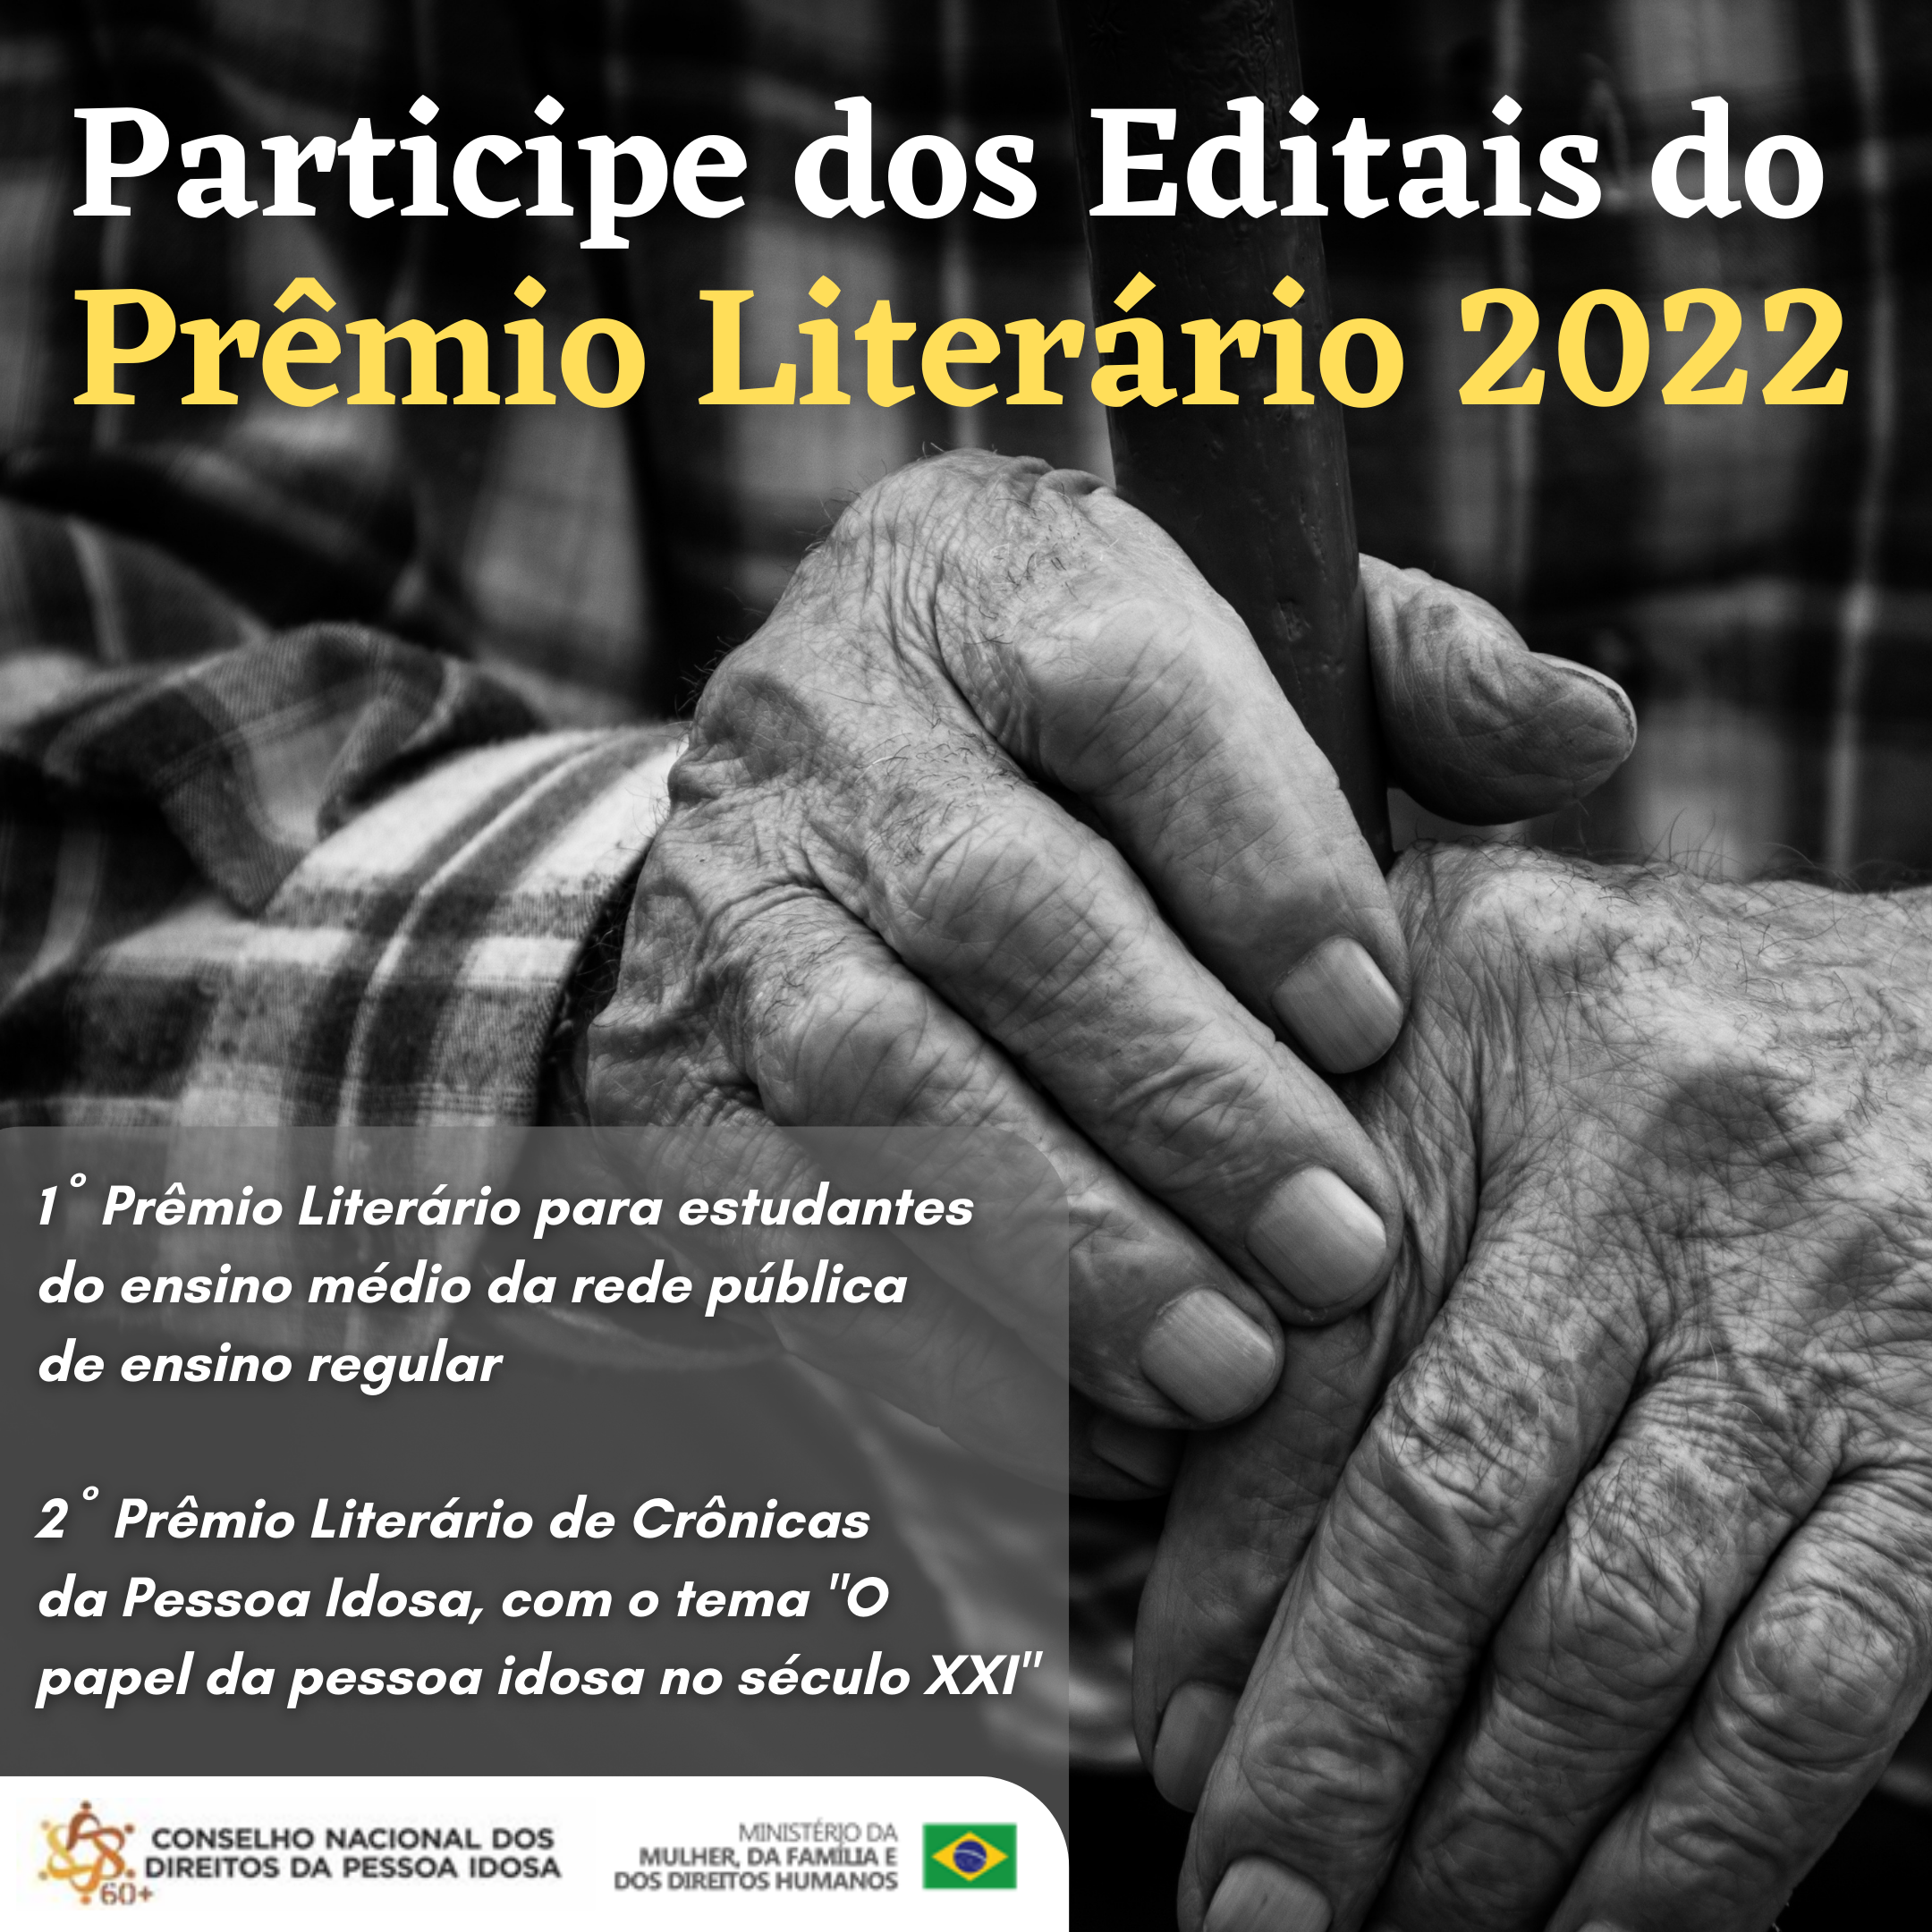 Participe dos Editais do Prêmio Literário 2022